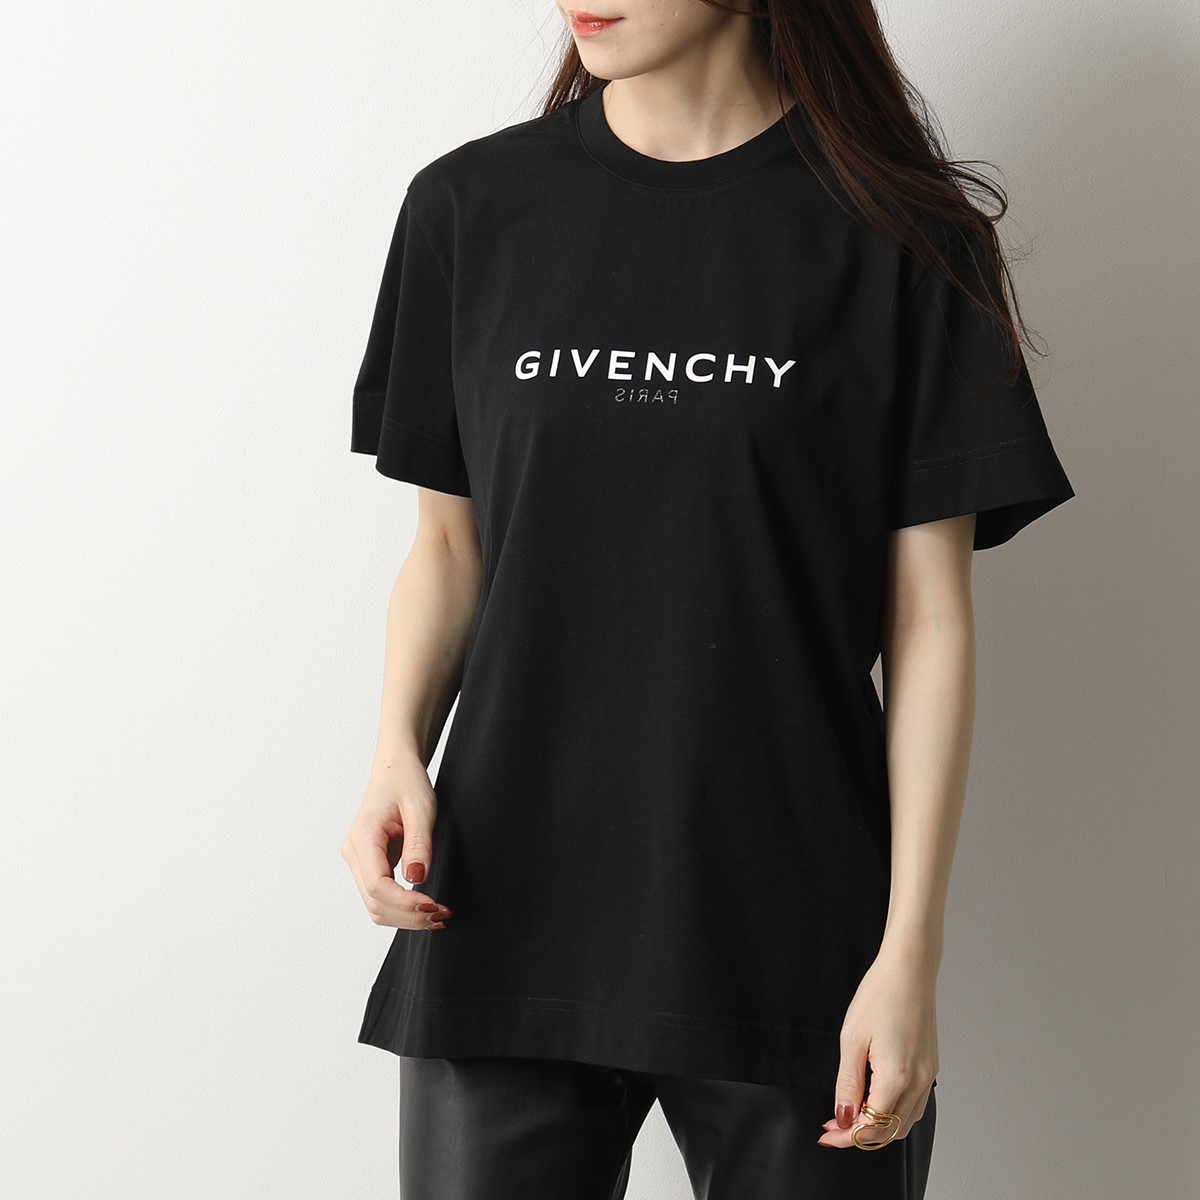 GIVENCHY ジバンシィ 半袖 Tシャツ BW707Z3Z5W レディース 4gリバース クルーネック カットソー ロゴT コットン  オーバーサイズ 001/BLACK | インポートセレクト musee